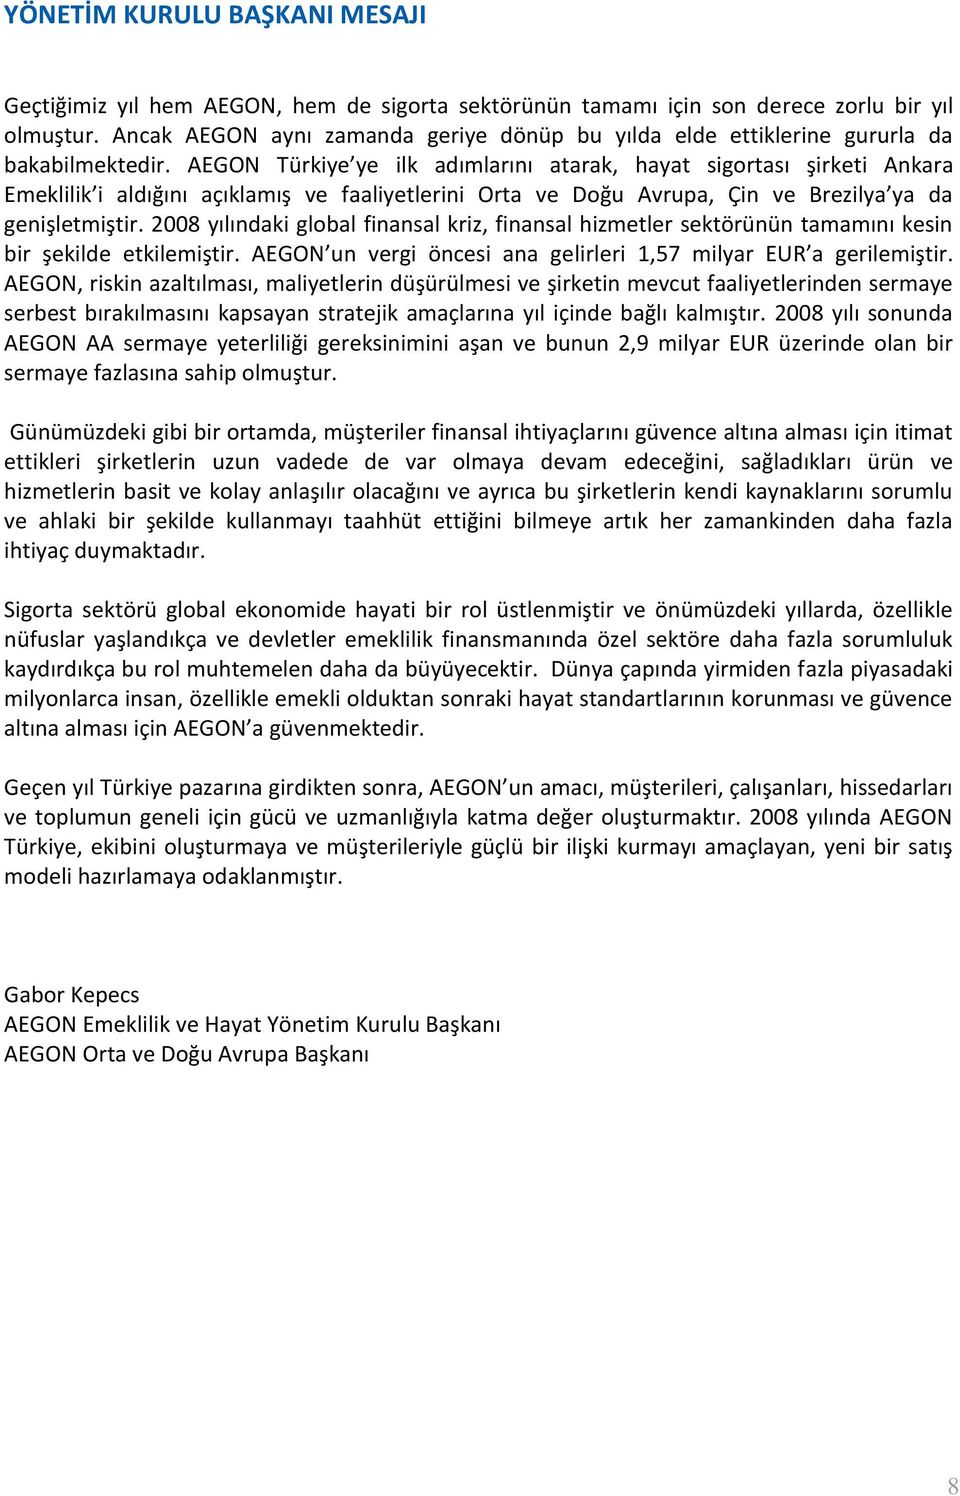 AEGON Türkiye ye ilk adımlarını atarak, hayat sigortası şirketi Ankara Emeklilik i aldığını açıklamış ve faaliyetlerini Orta ve Doğu Avrupa, Çin ve Brezilya ya da genişletmiştir.